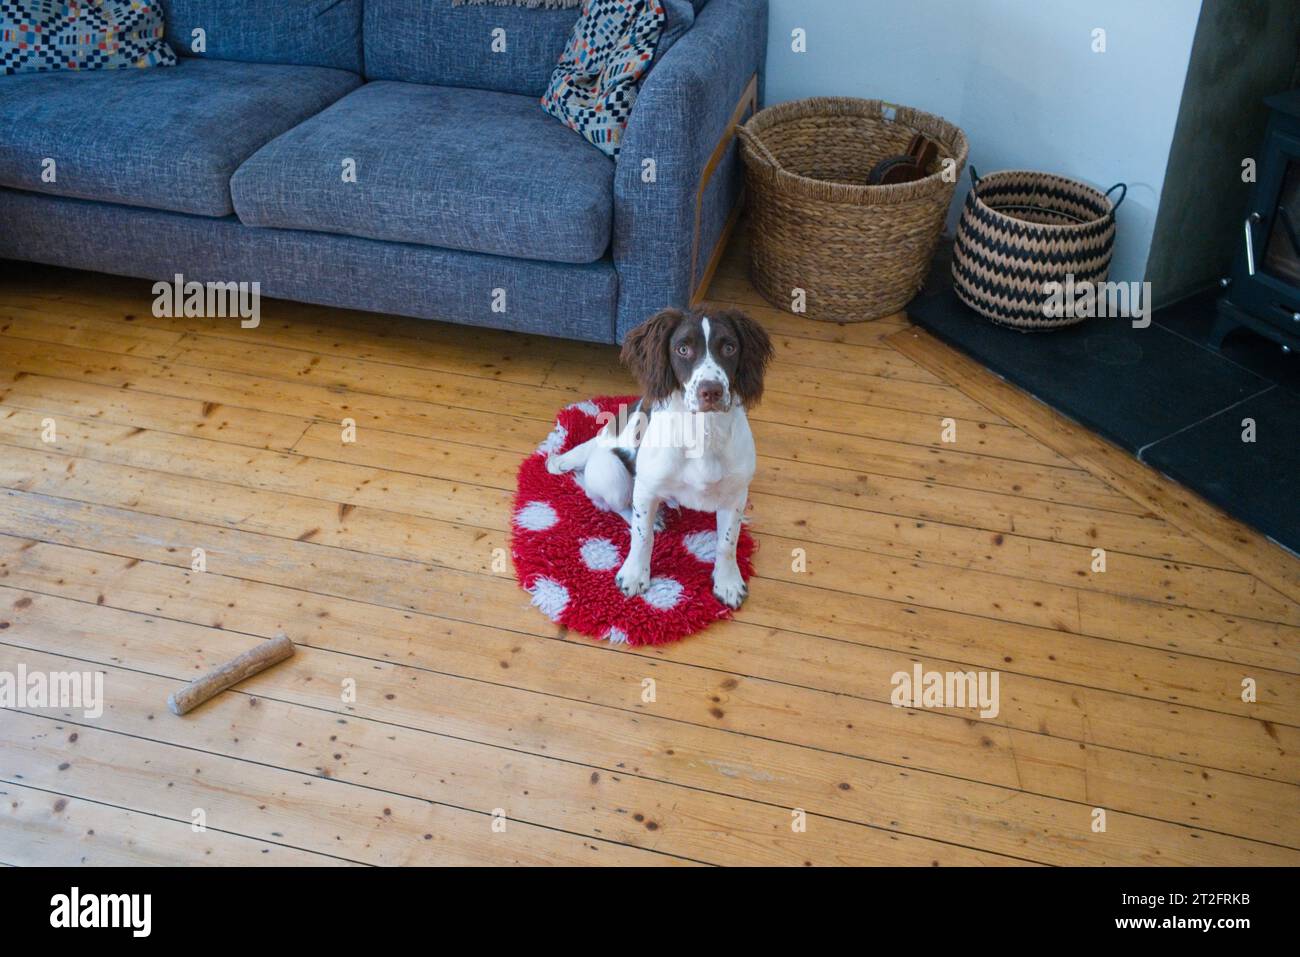 Uno springer spaniel di cinque mesi seduto in una casa con pavimento in legno di pino Foto Stock